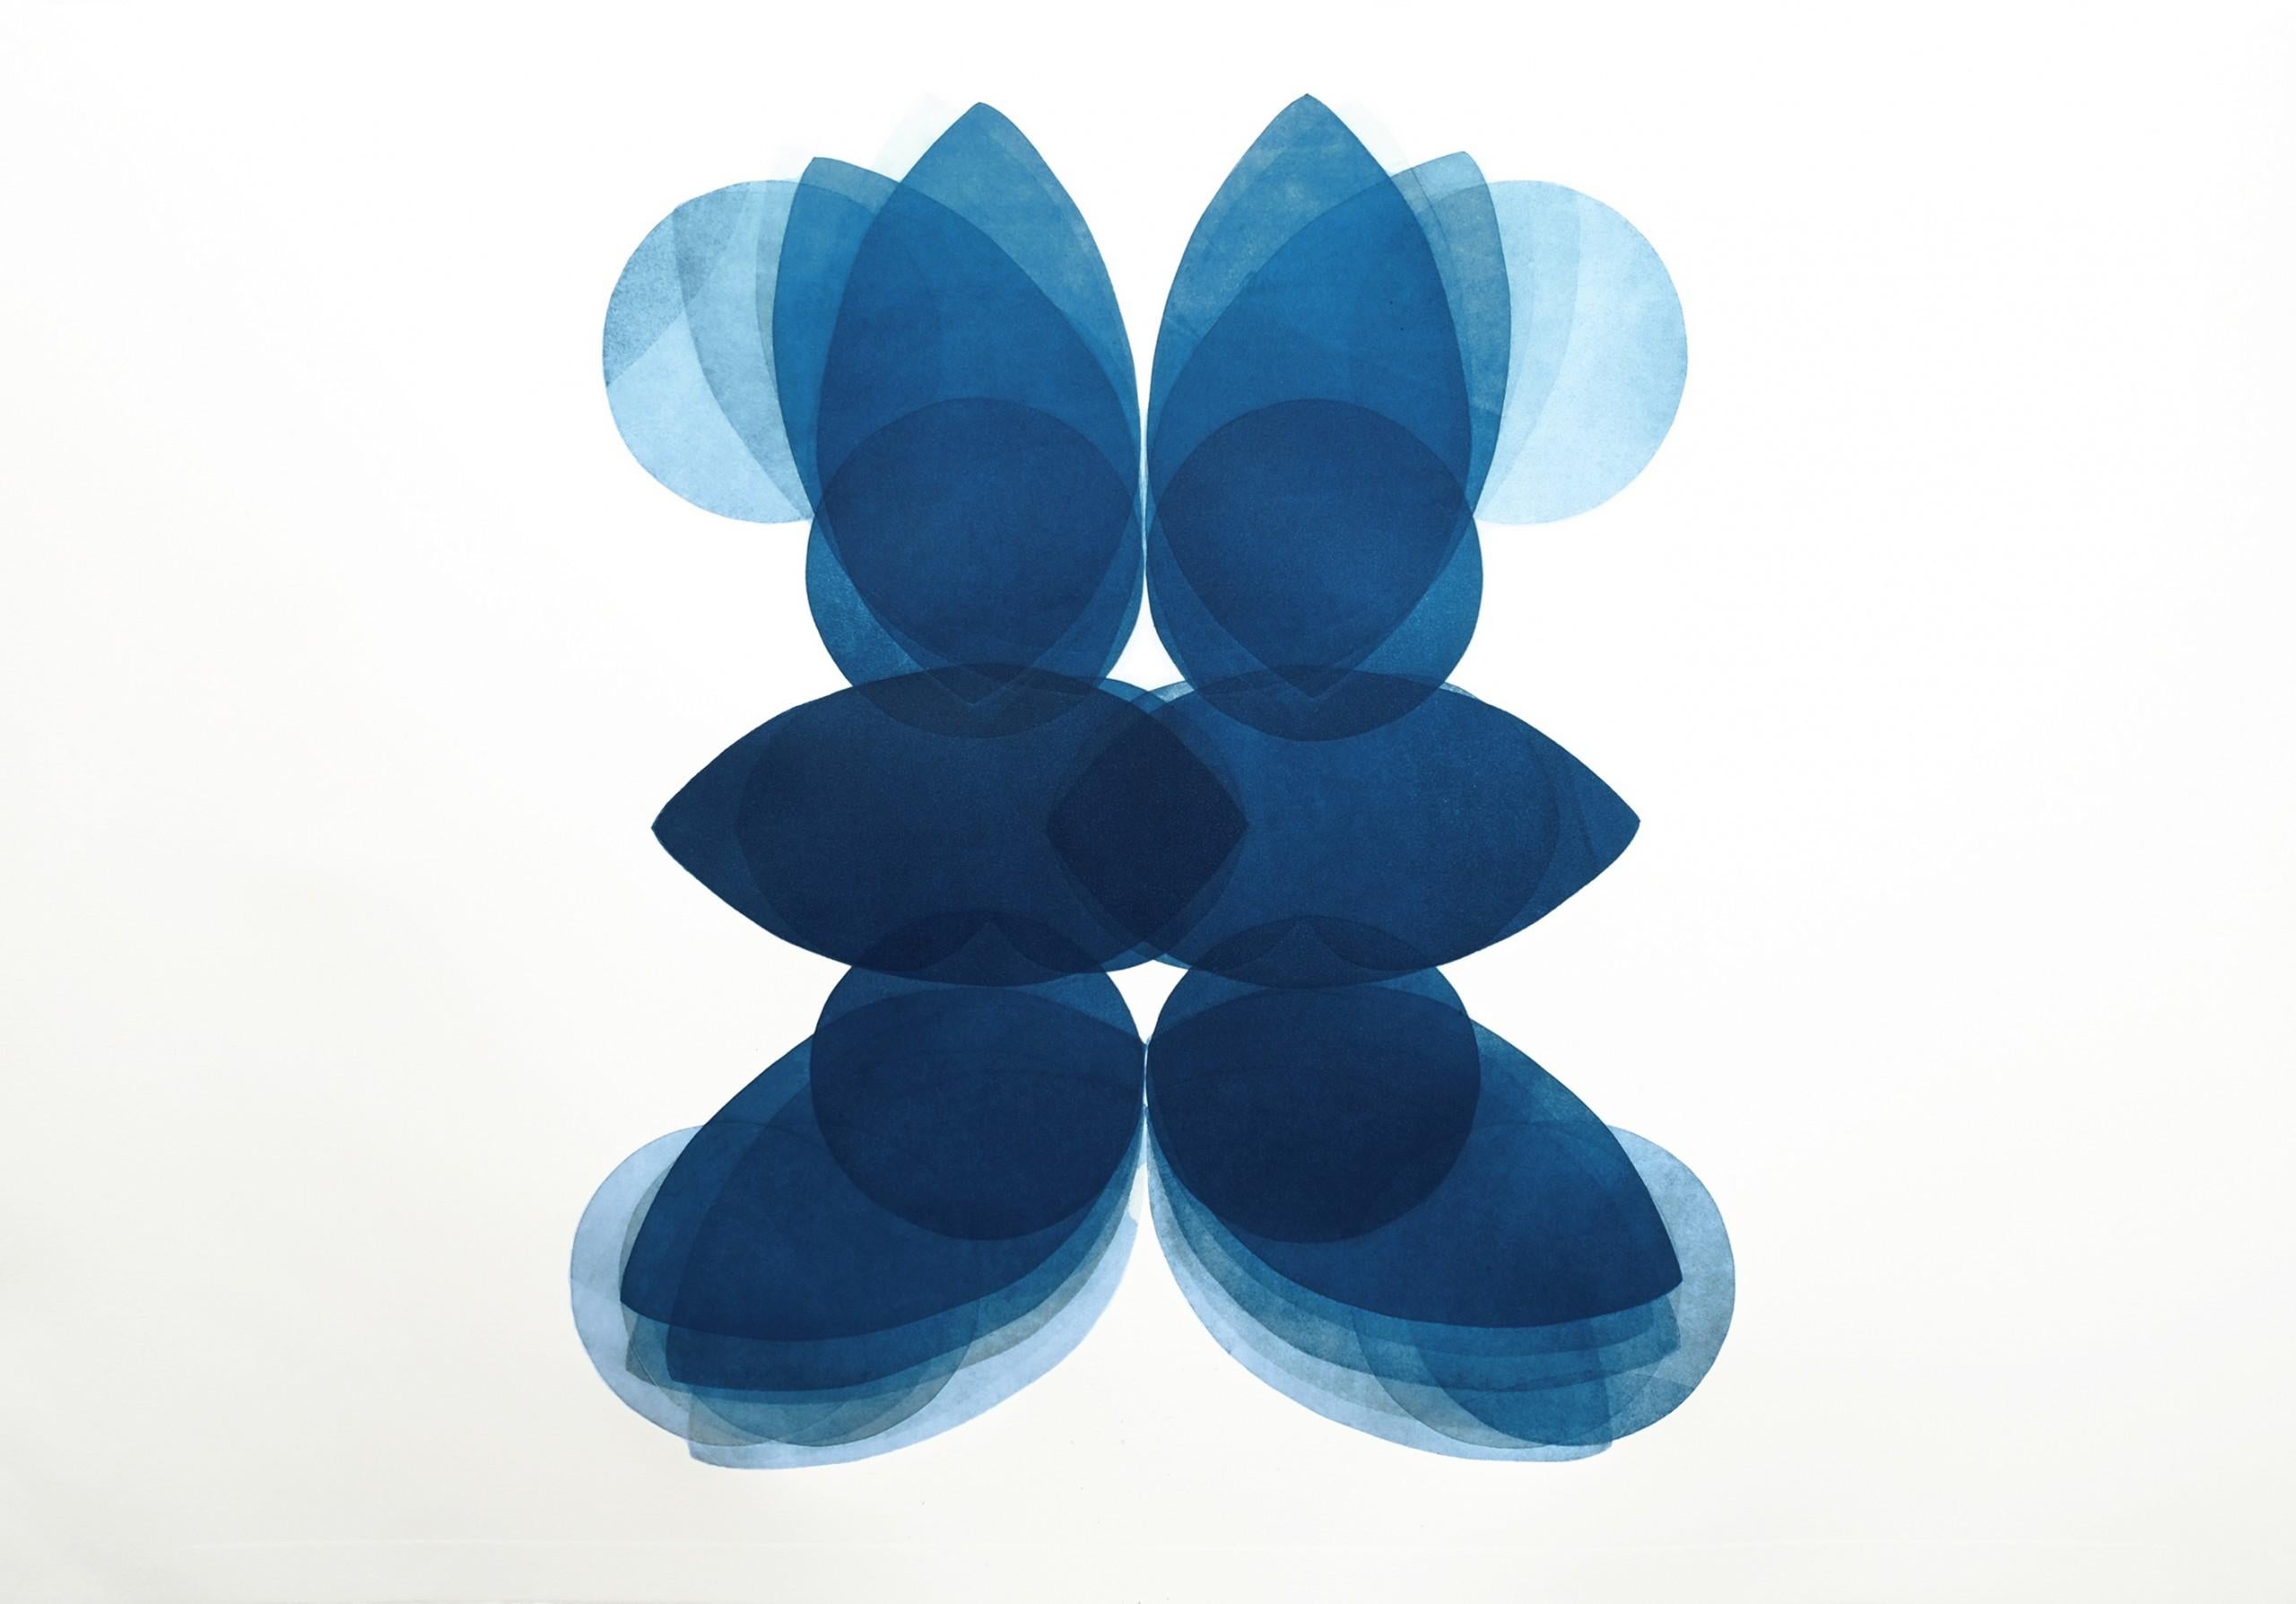 NV4, Impression abstraite unique, œuvre d'art contemporaine minimaliste en bleu et blanc